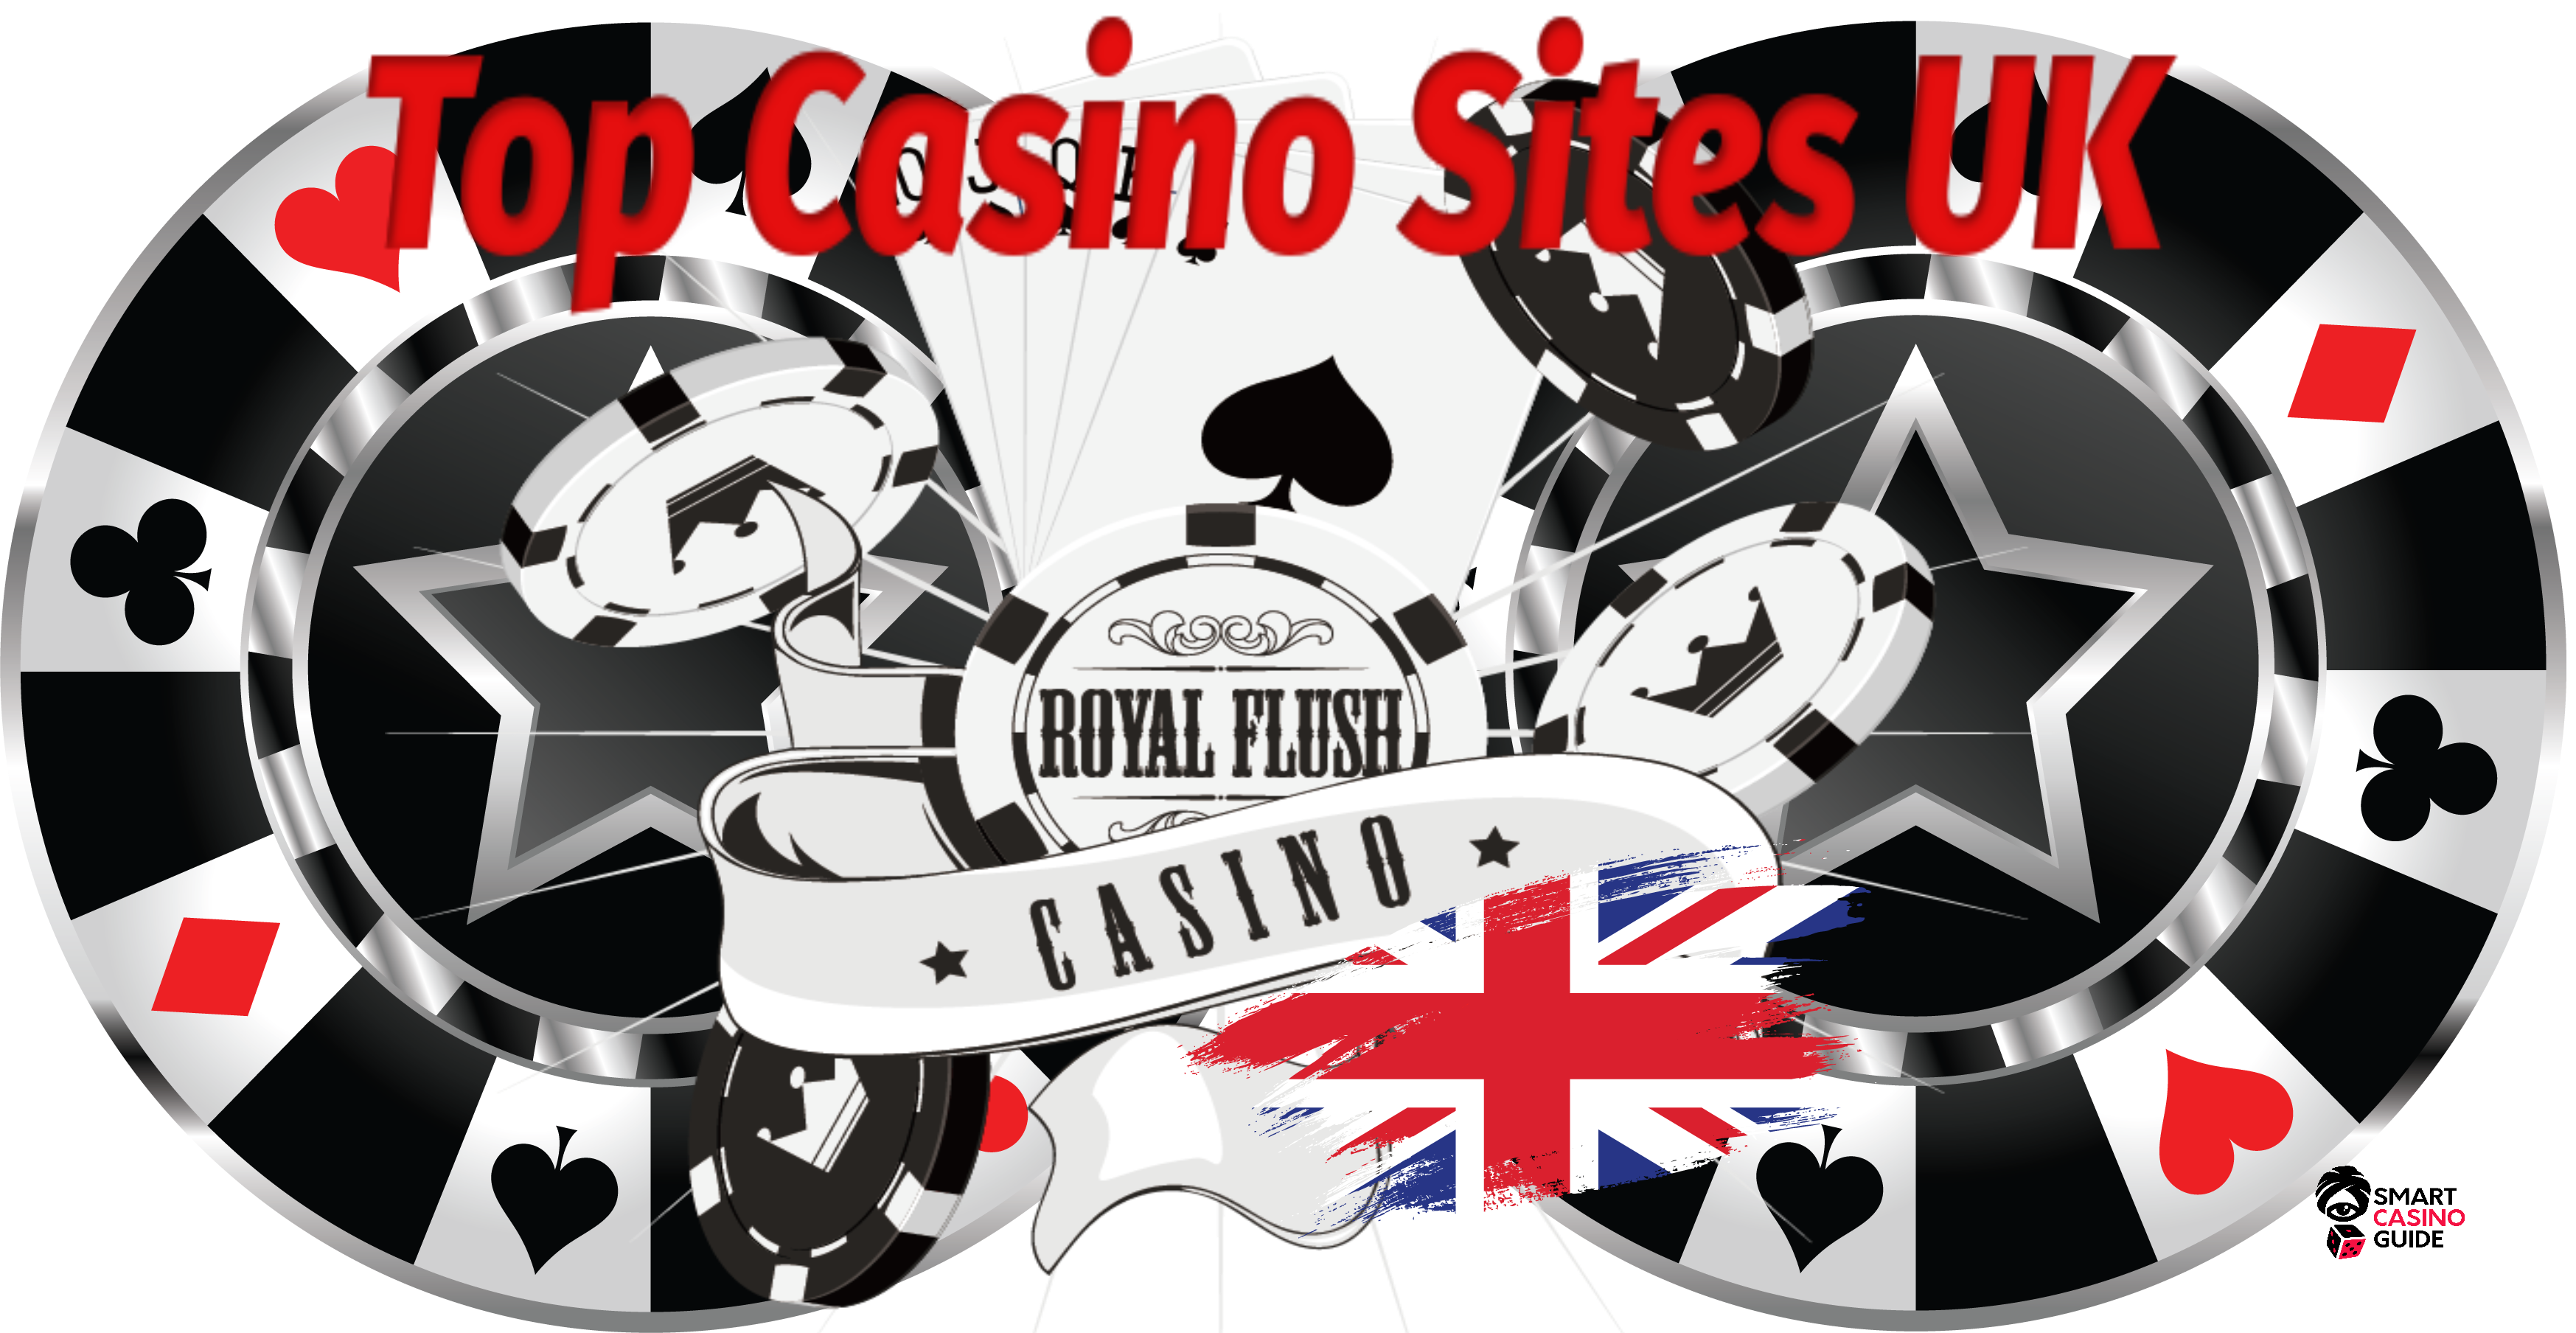 Casino Sites Reviews